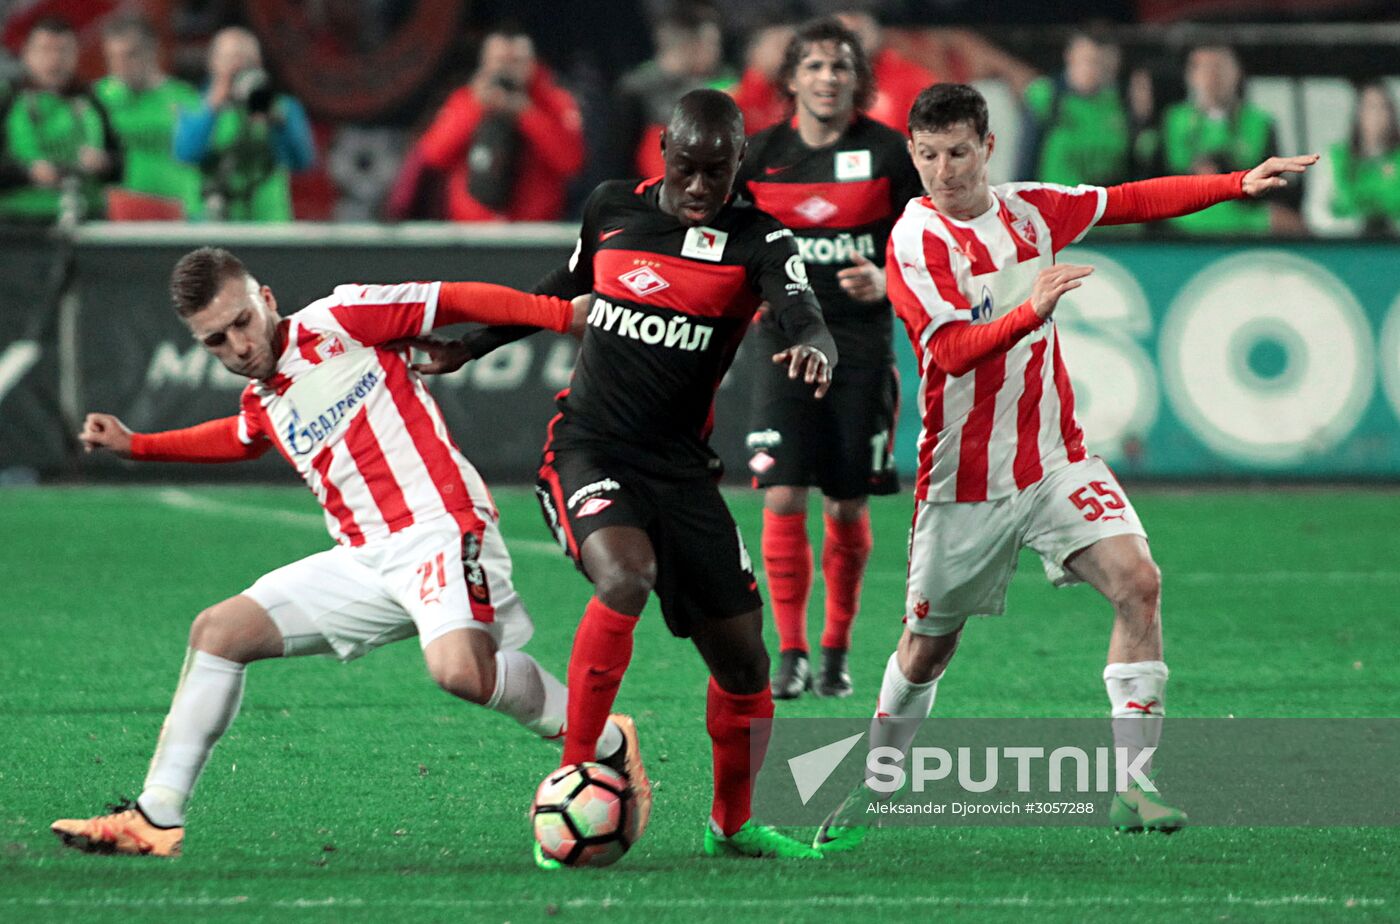 Crvena Zvezda vs. Spartak friendly football match